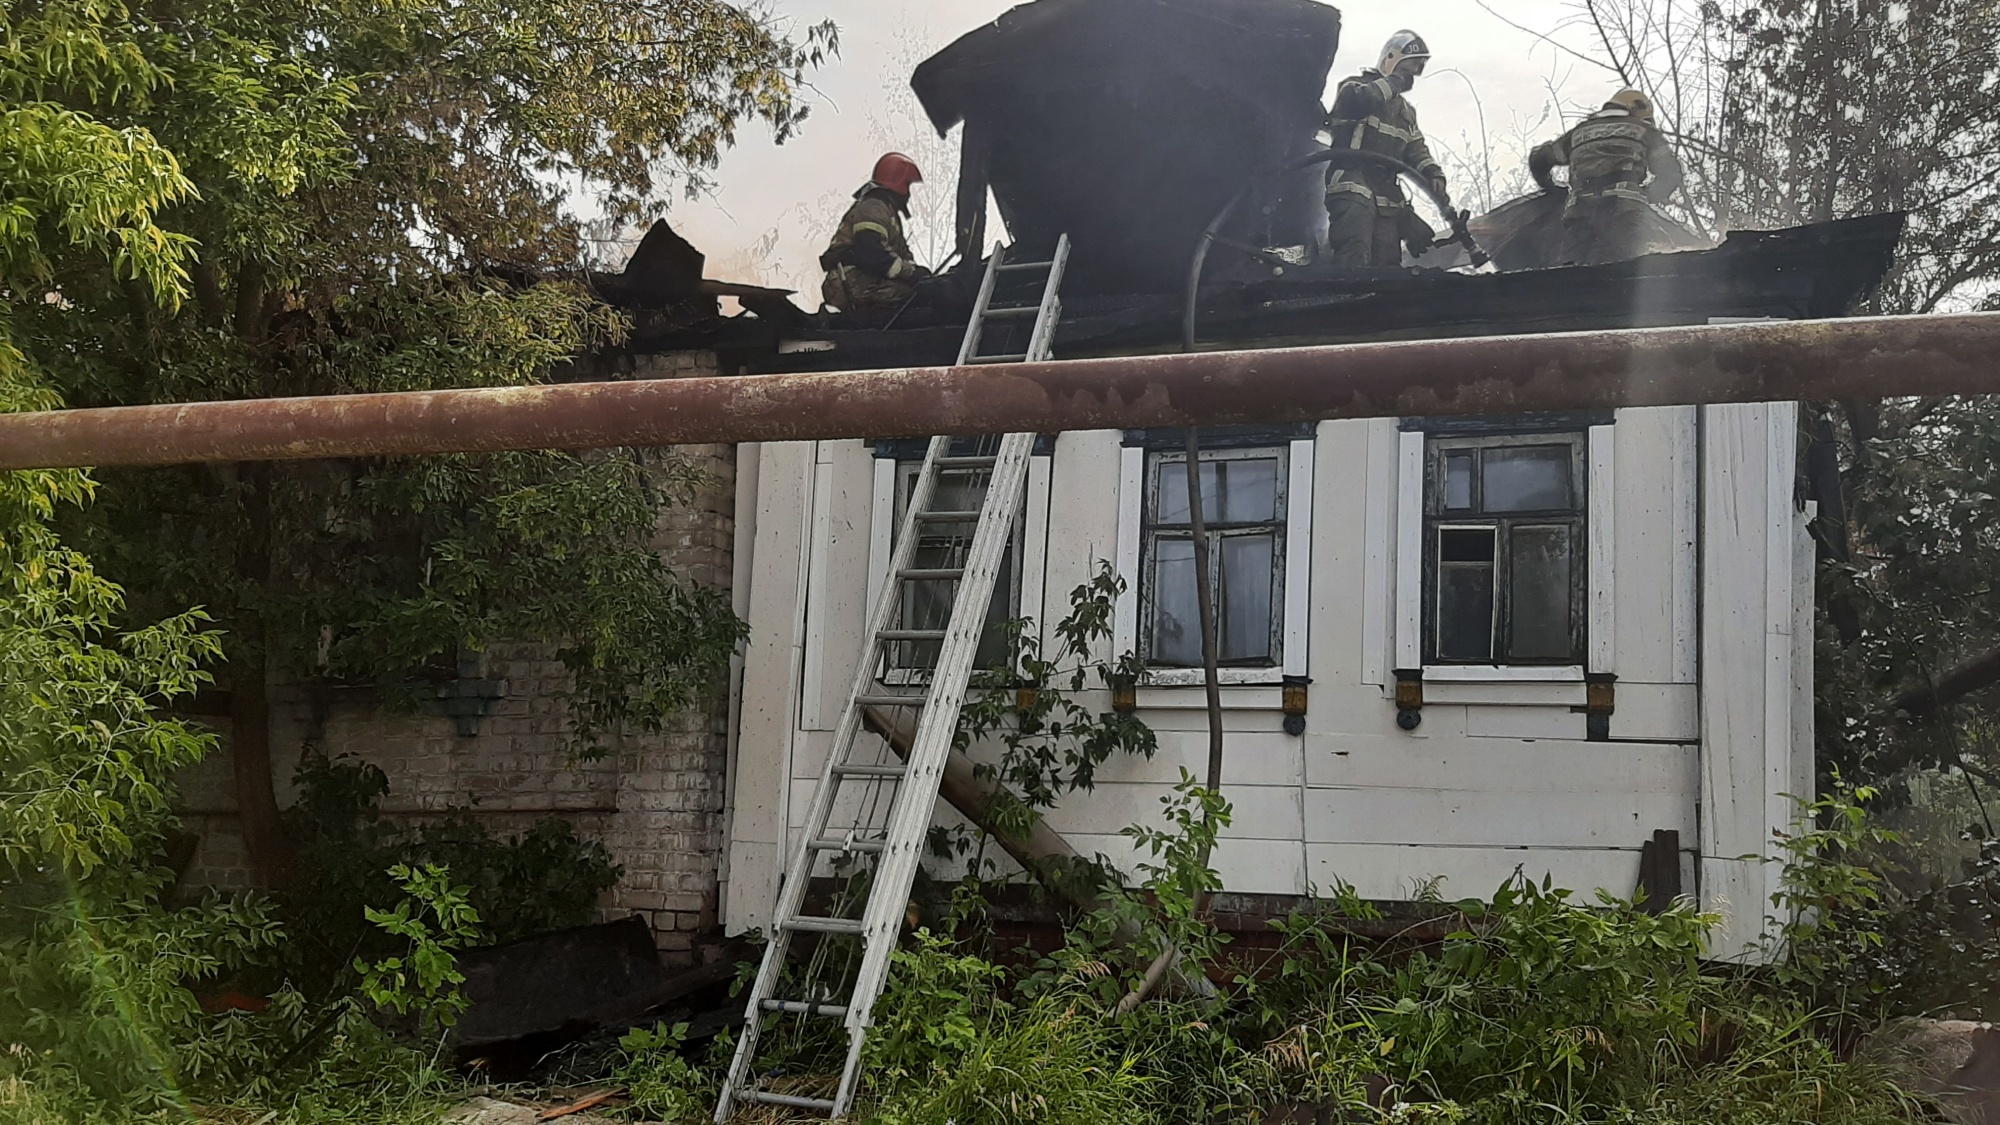 Один человек погиб при пожаре в частном доме в Сормово